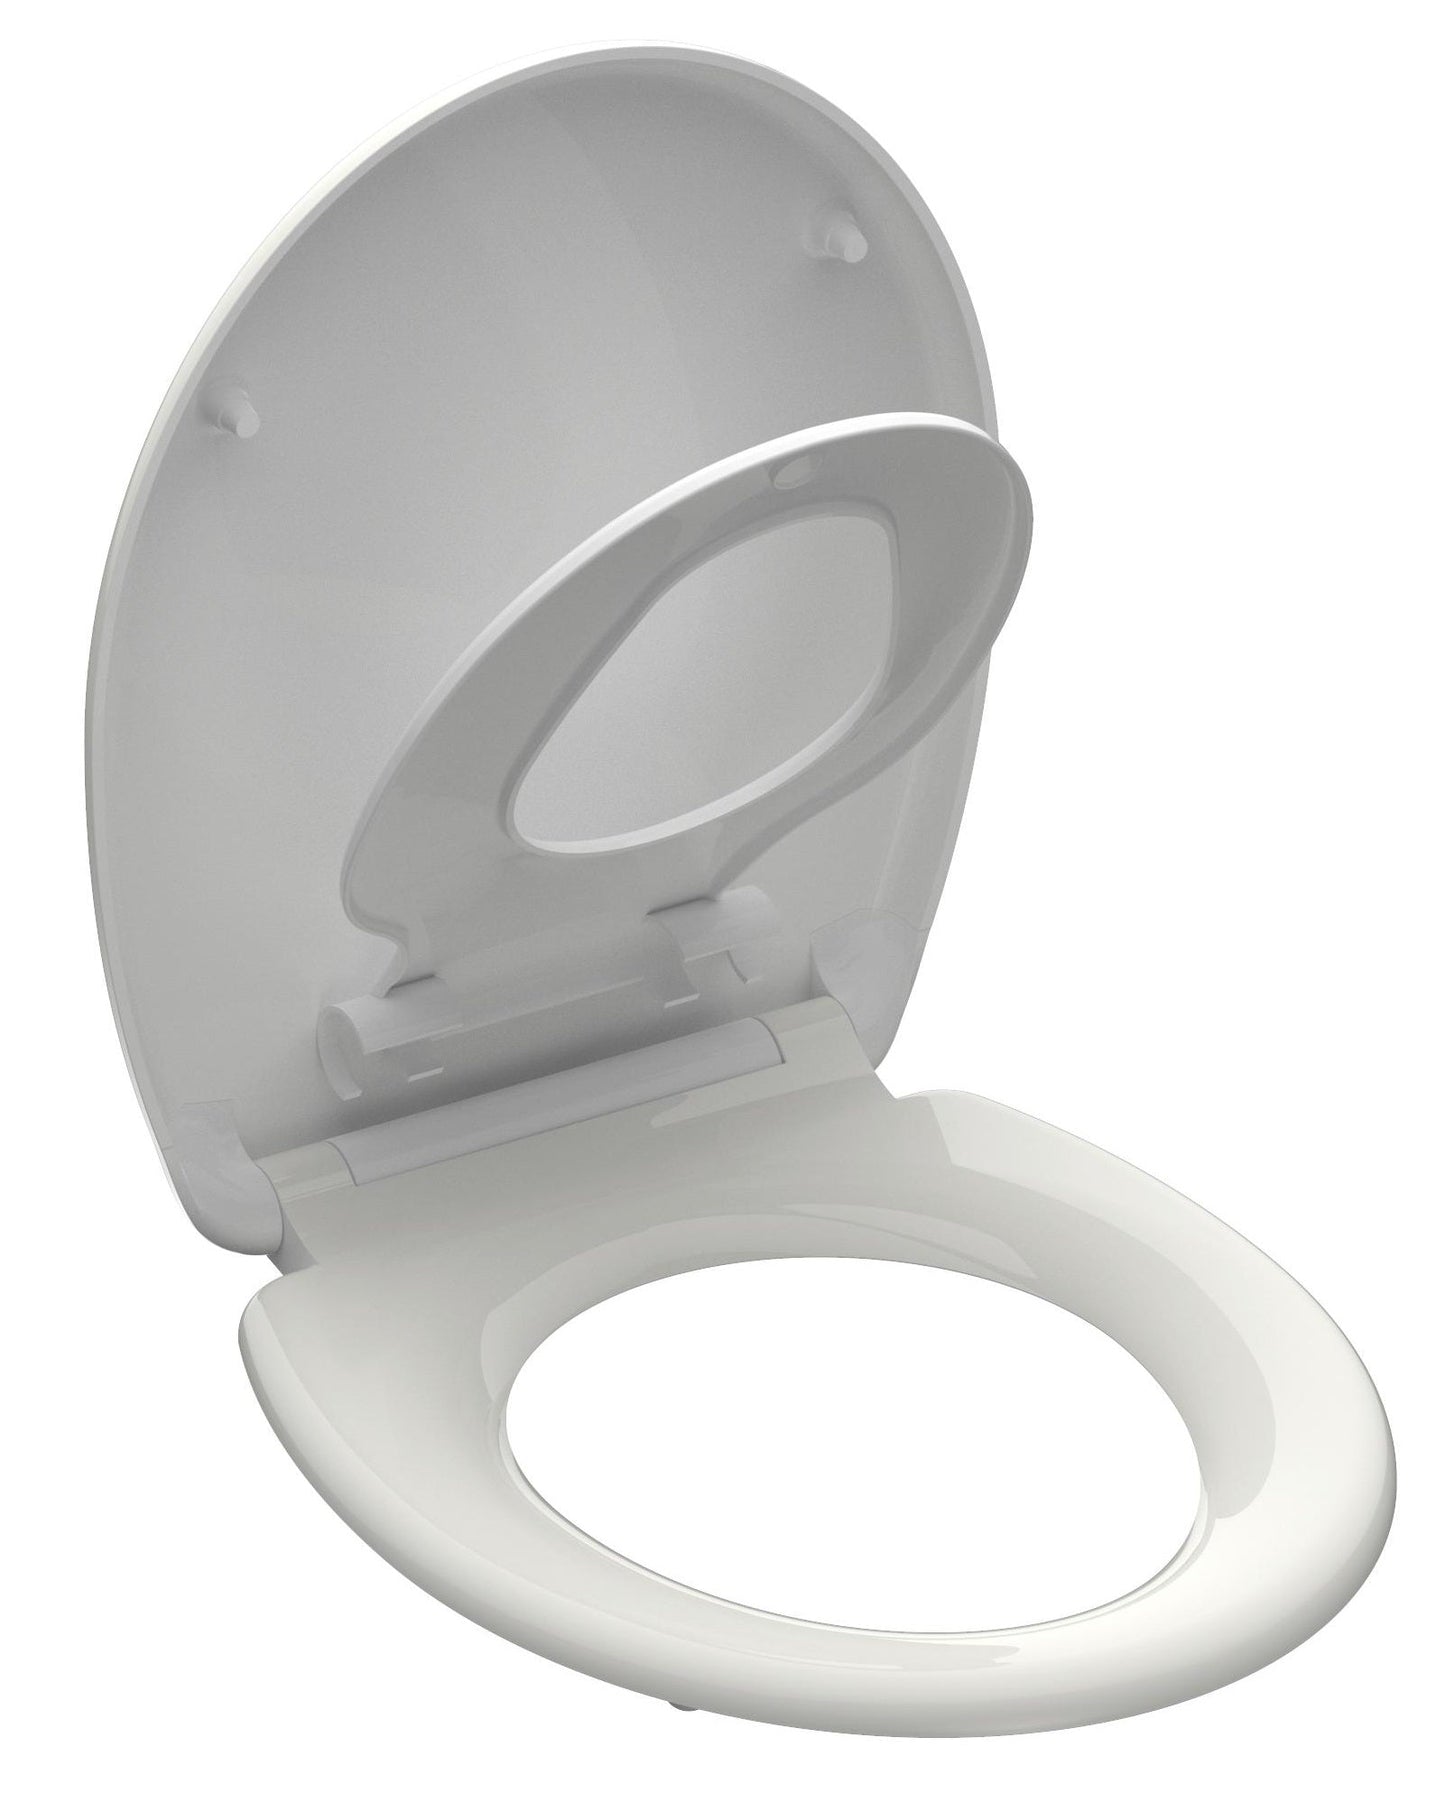 Vit toalettsits för vägghängd toalett anpassad för barn - BÄST. CC-mått: 90-190mm Längd: 451mm Bredd: 371mm.